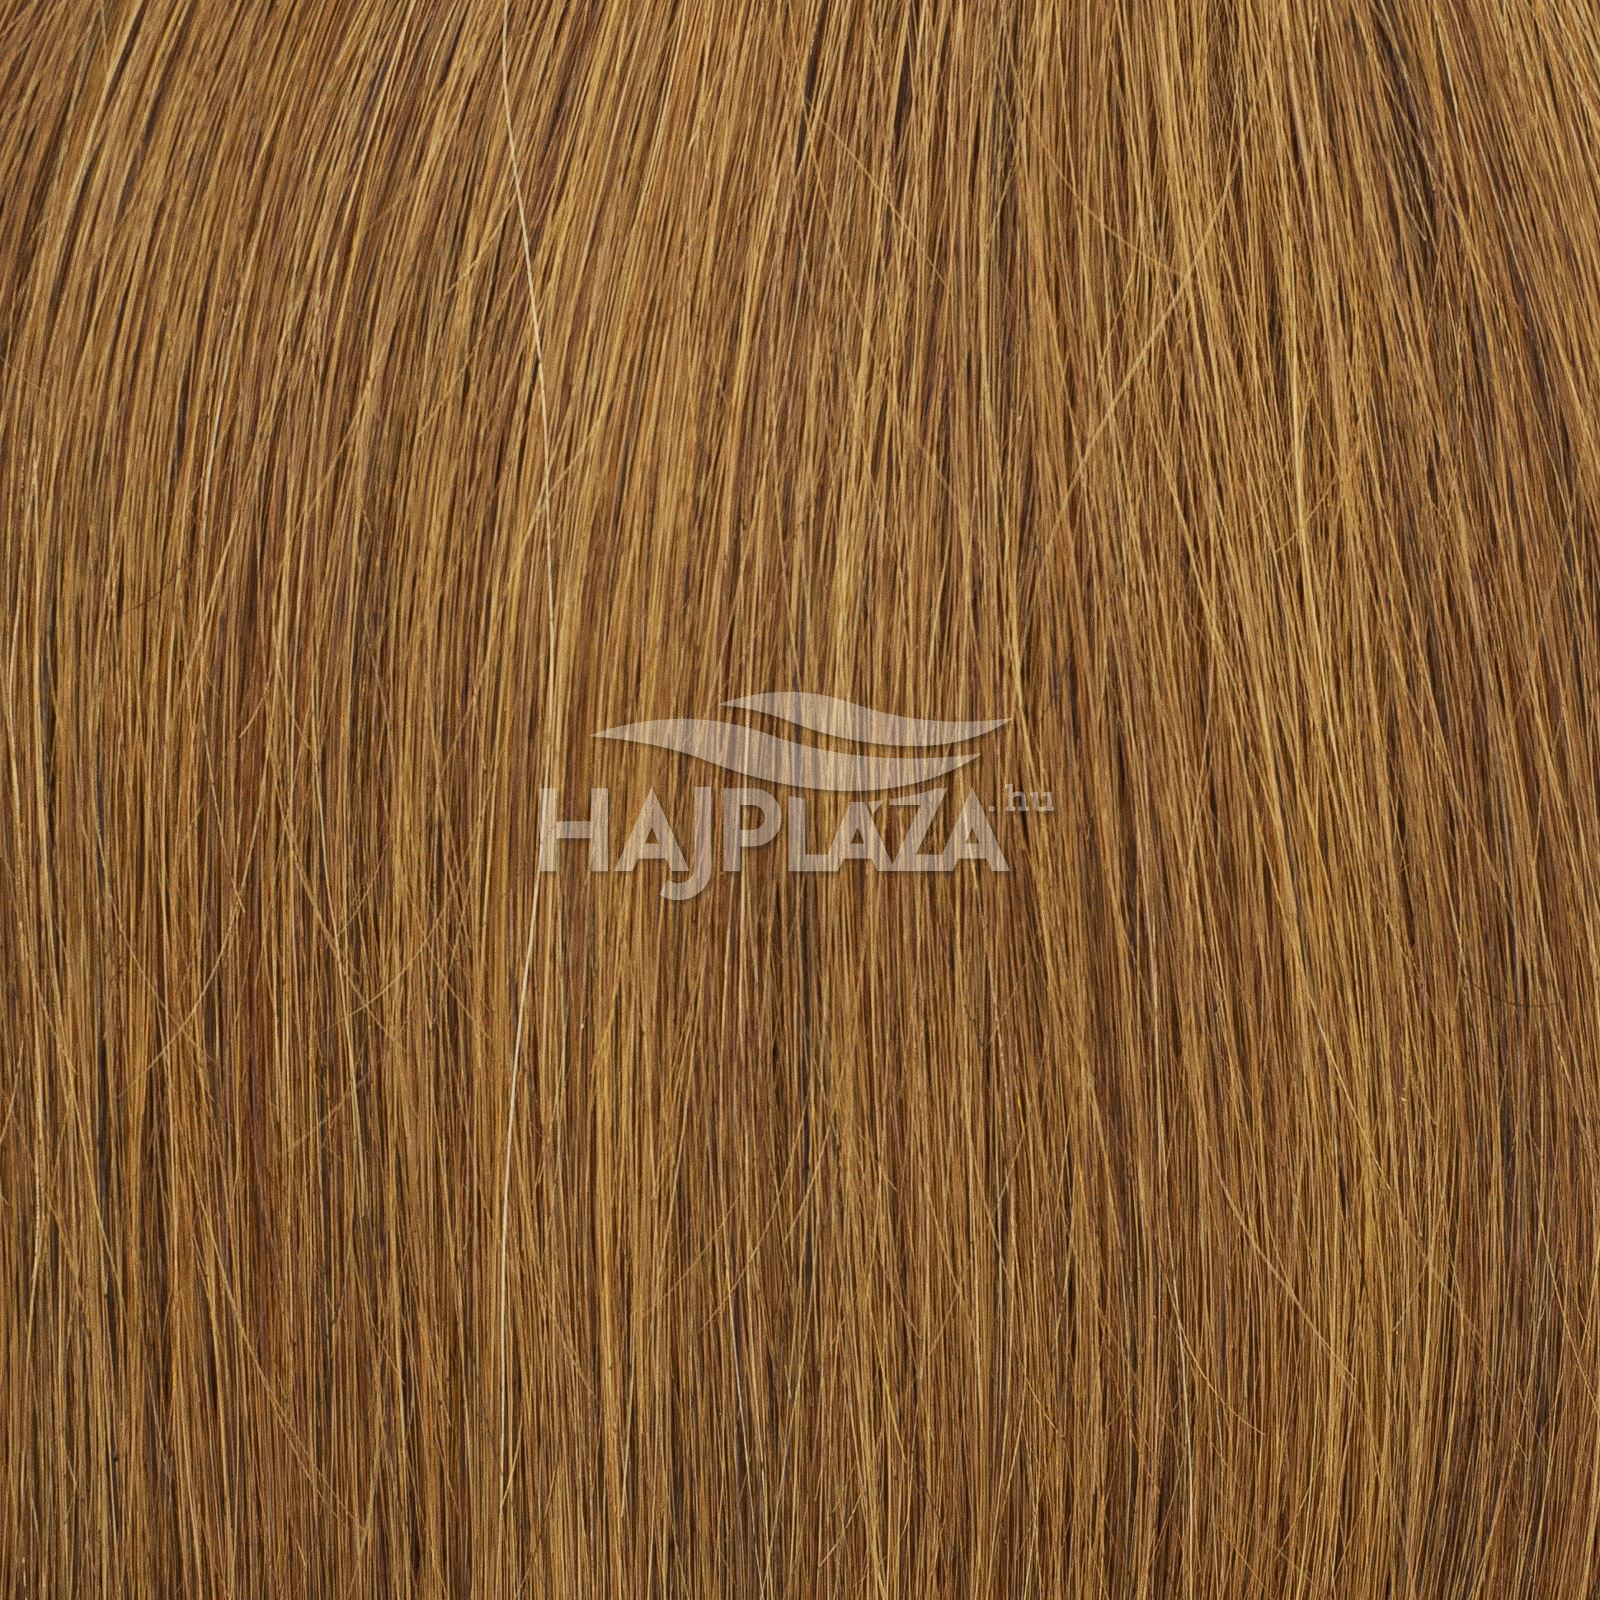 Festett középbarna keratinos haj - 60-65 cm